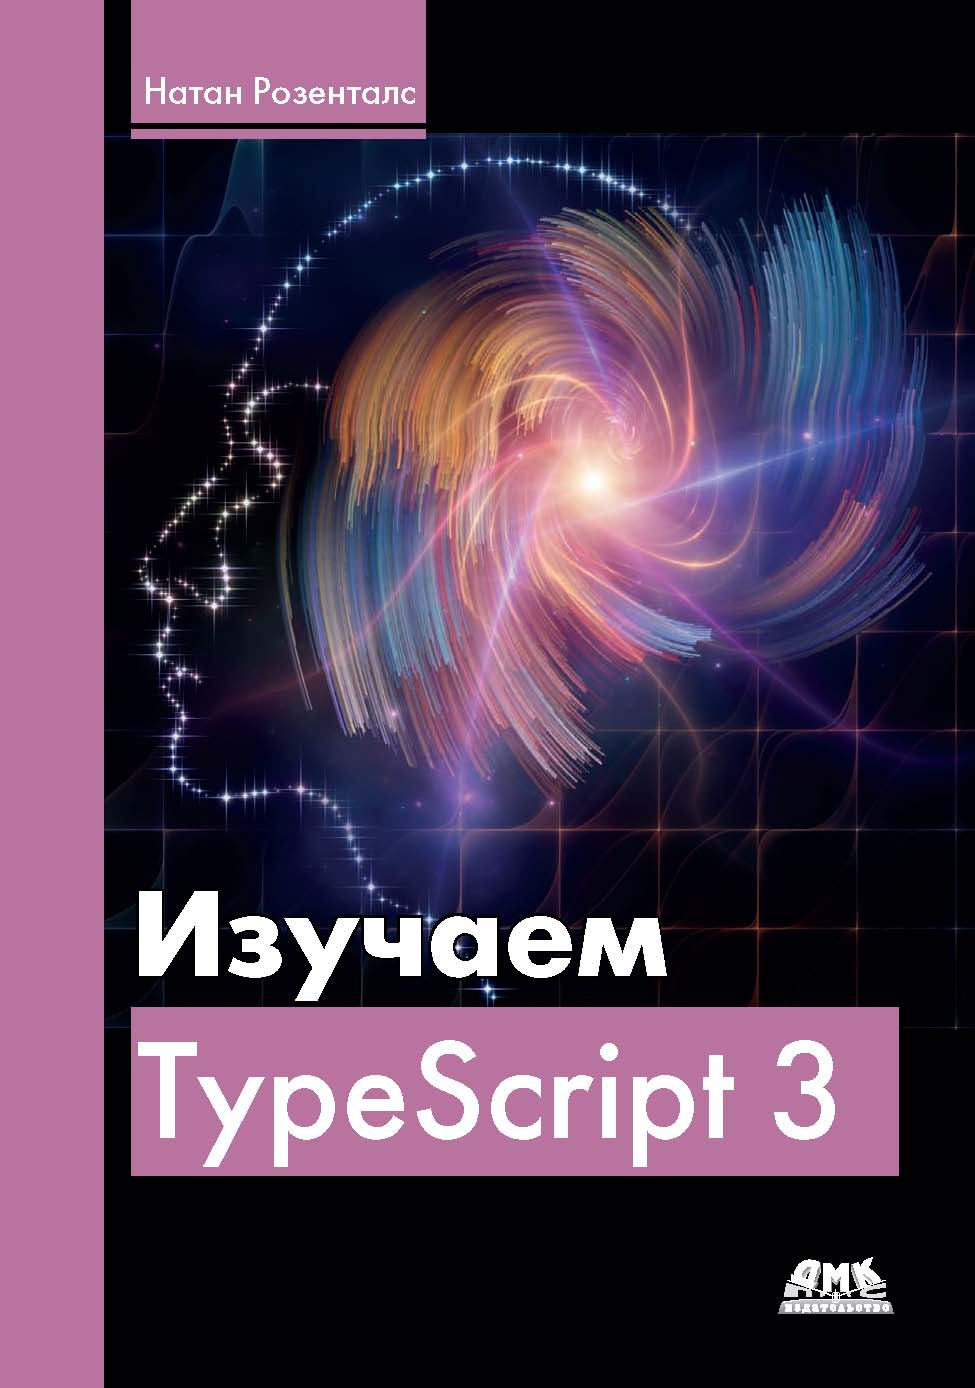 Книга  Изучаем Typescript 3 созданная Натан Розенталс, Д. А. Беликов может относится к жанру зарубежная компьютерная литература, интернет, программирование. Стоимость электронной книги Изучаем Typescript 3 с идентификатором 44336583 составляет 990.00 руб.